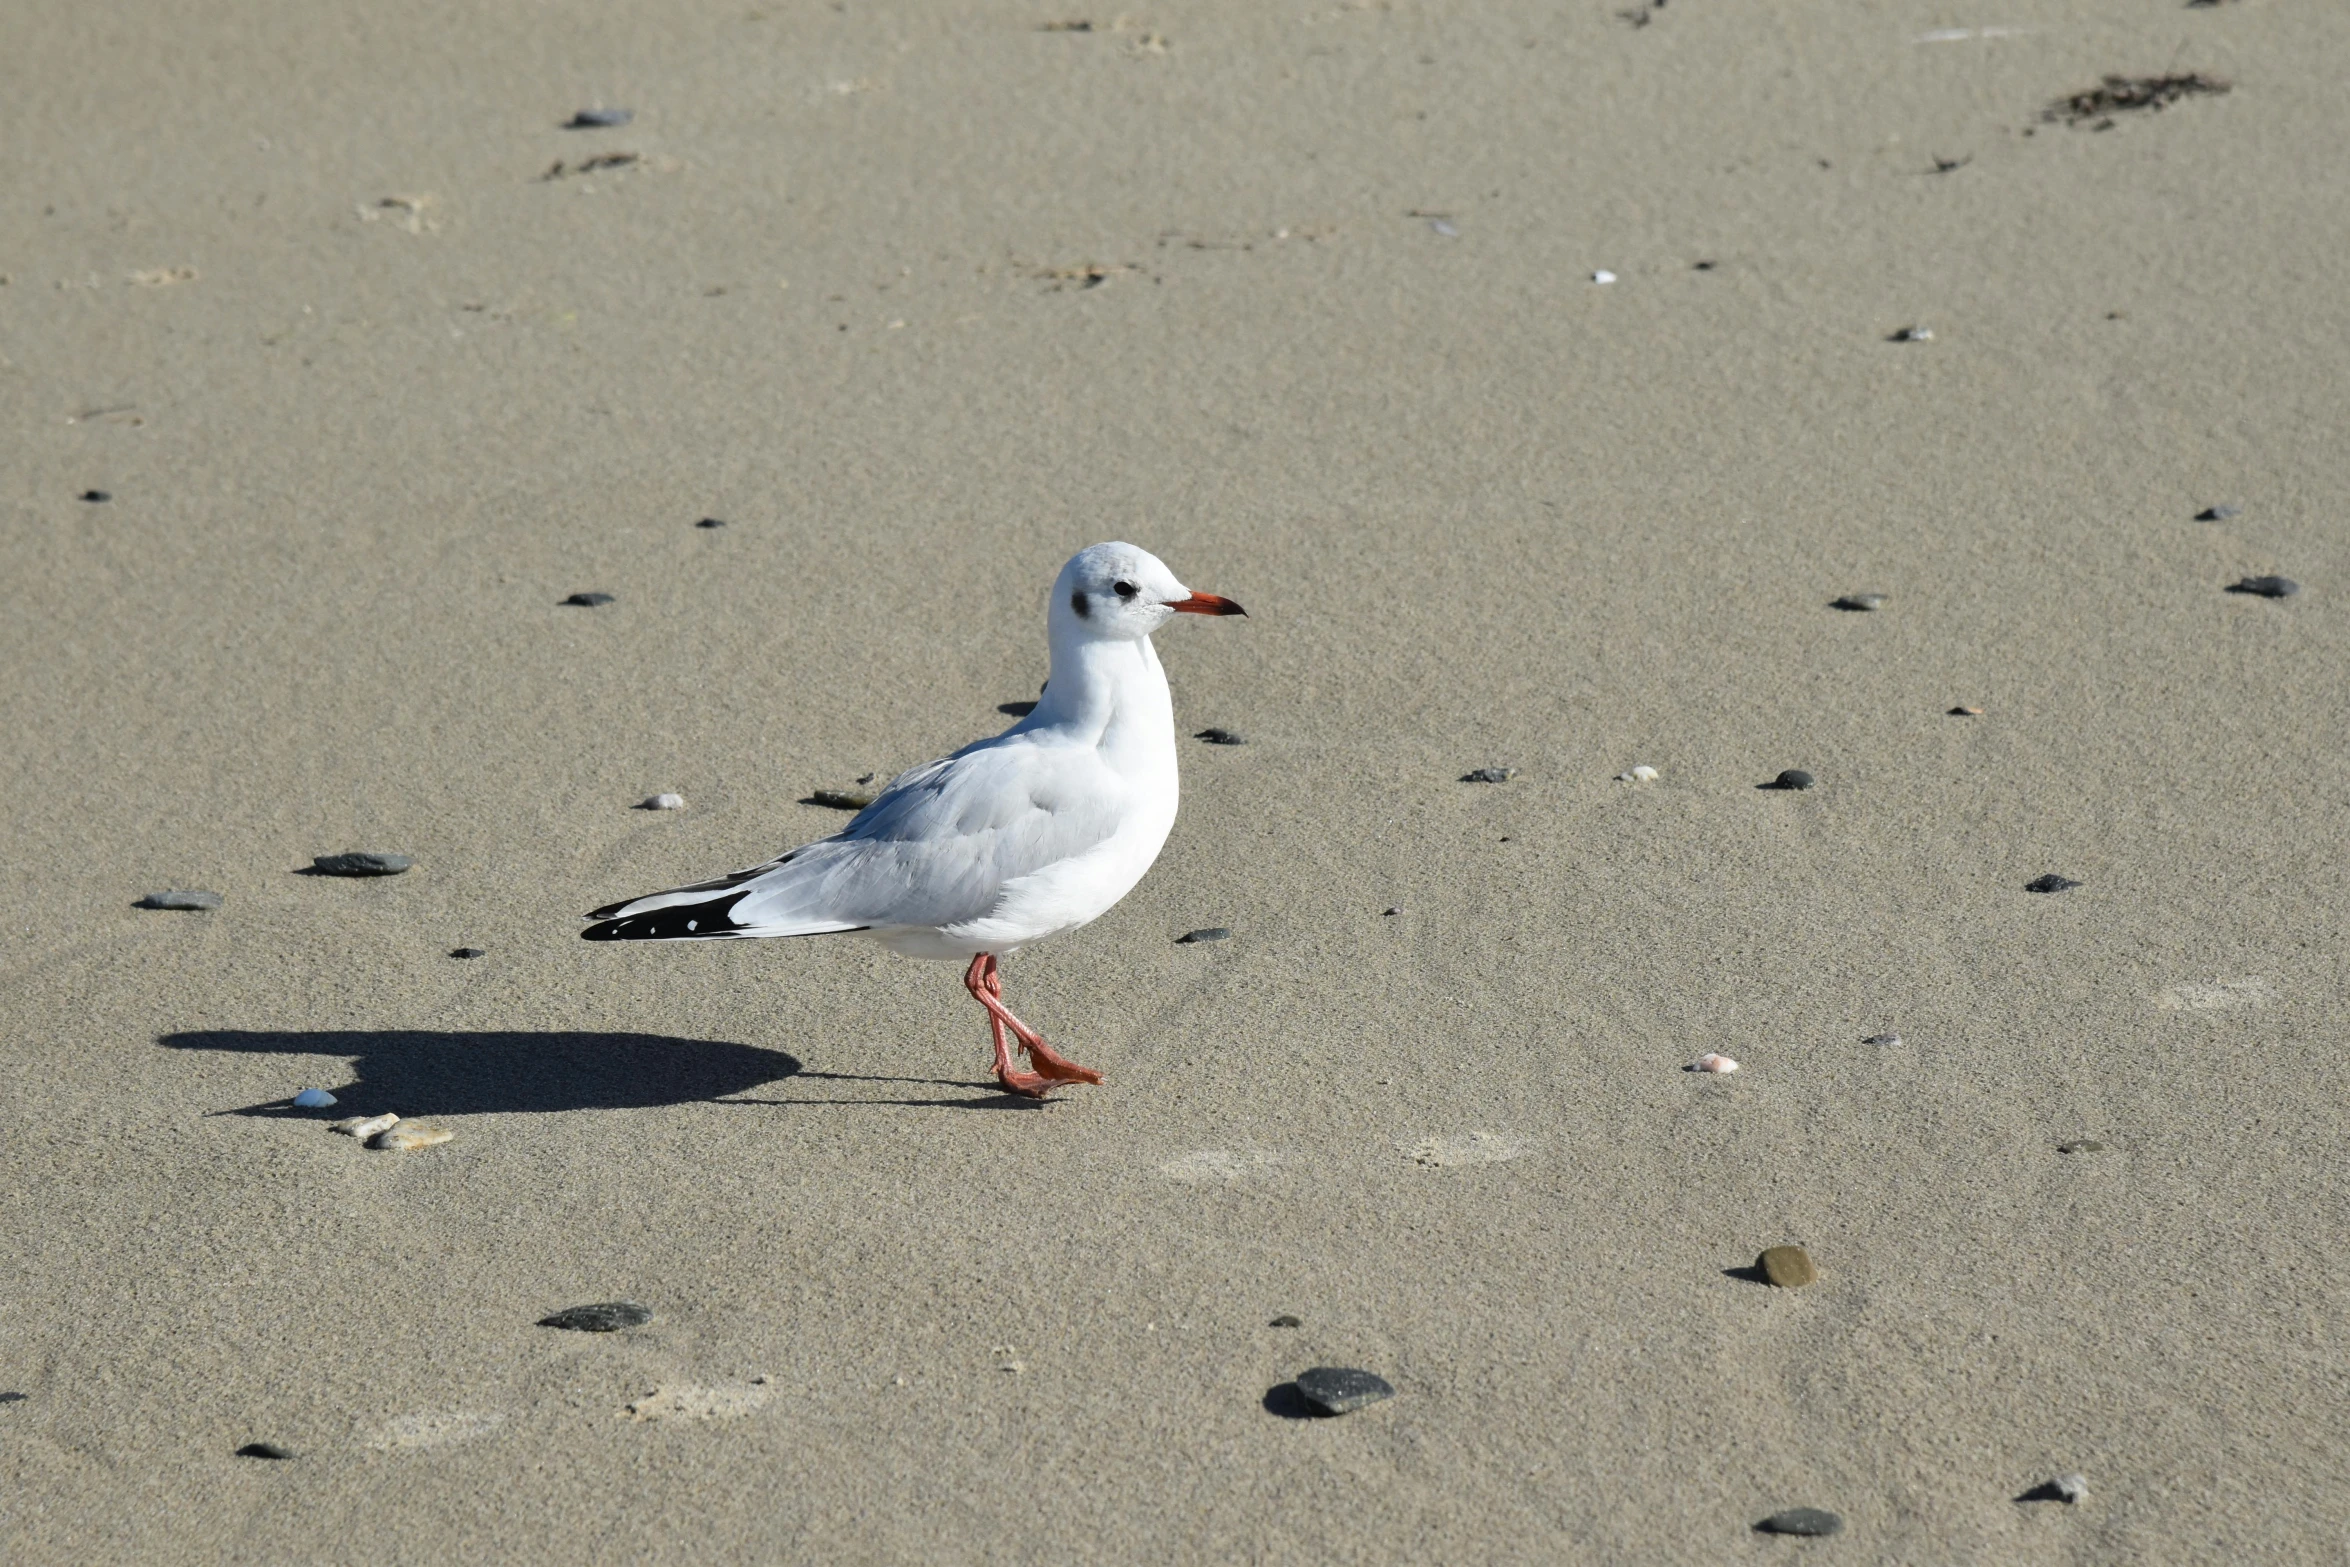 a seagull stands alone in a sandy beach